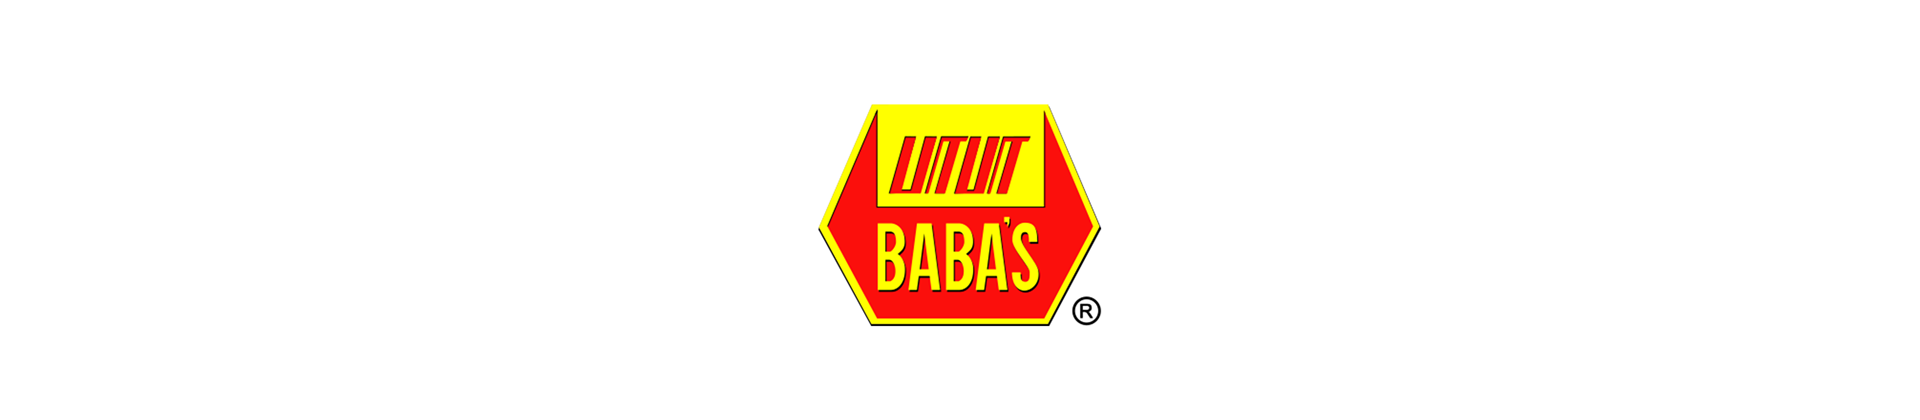 Categories - BABA brands